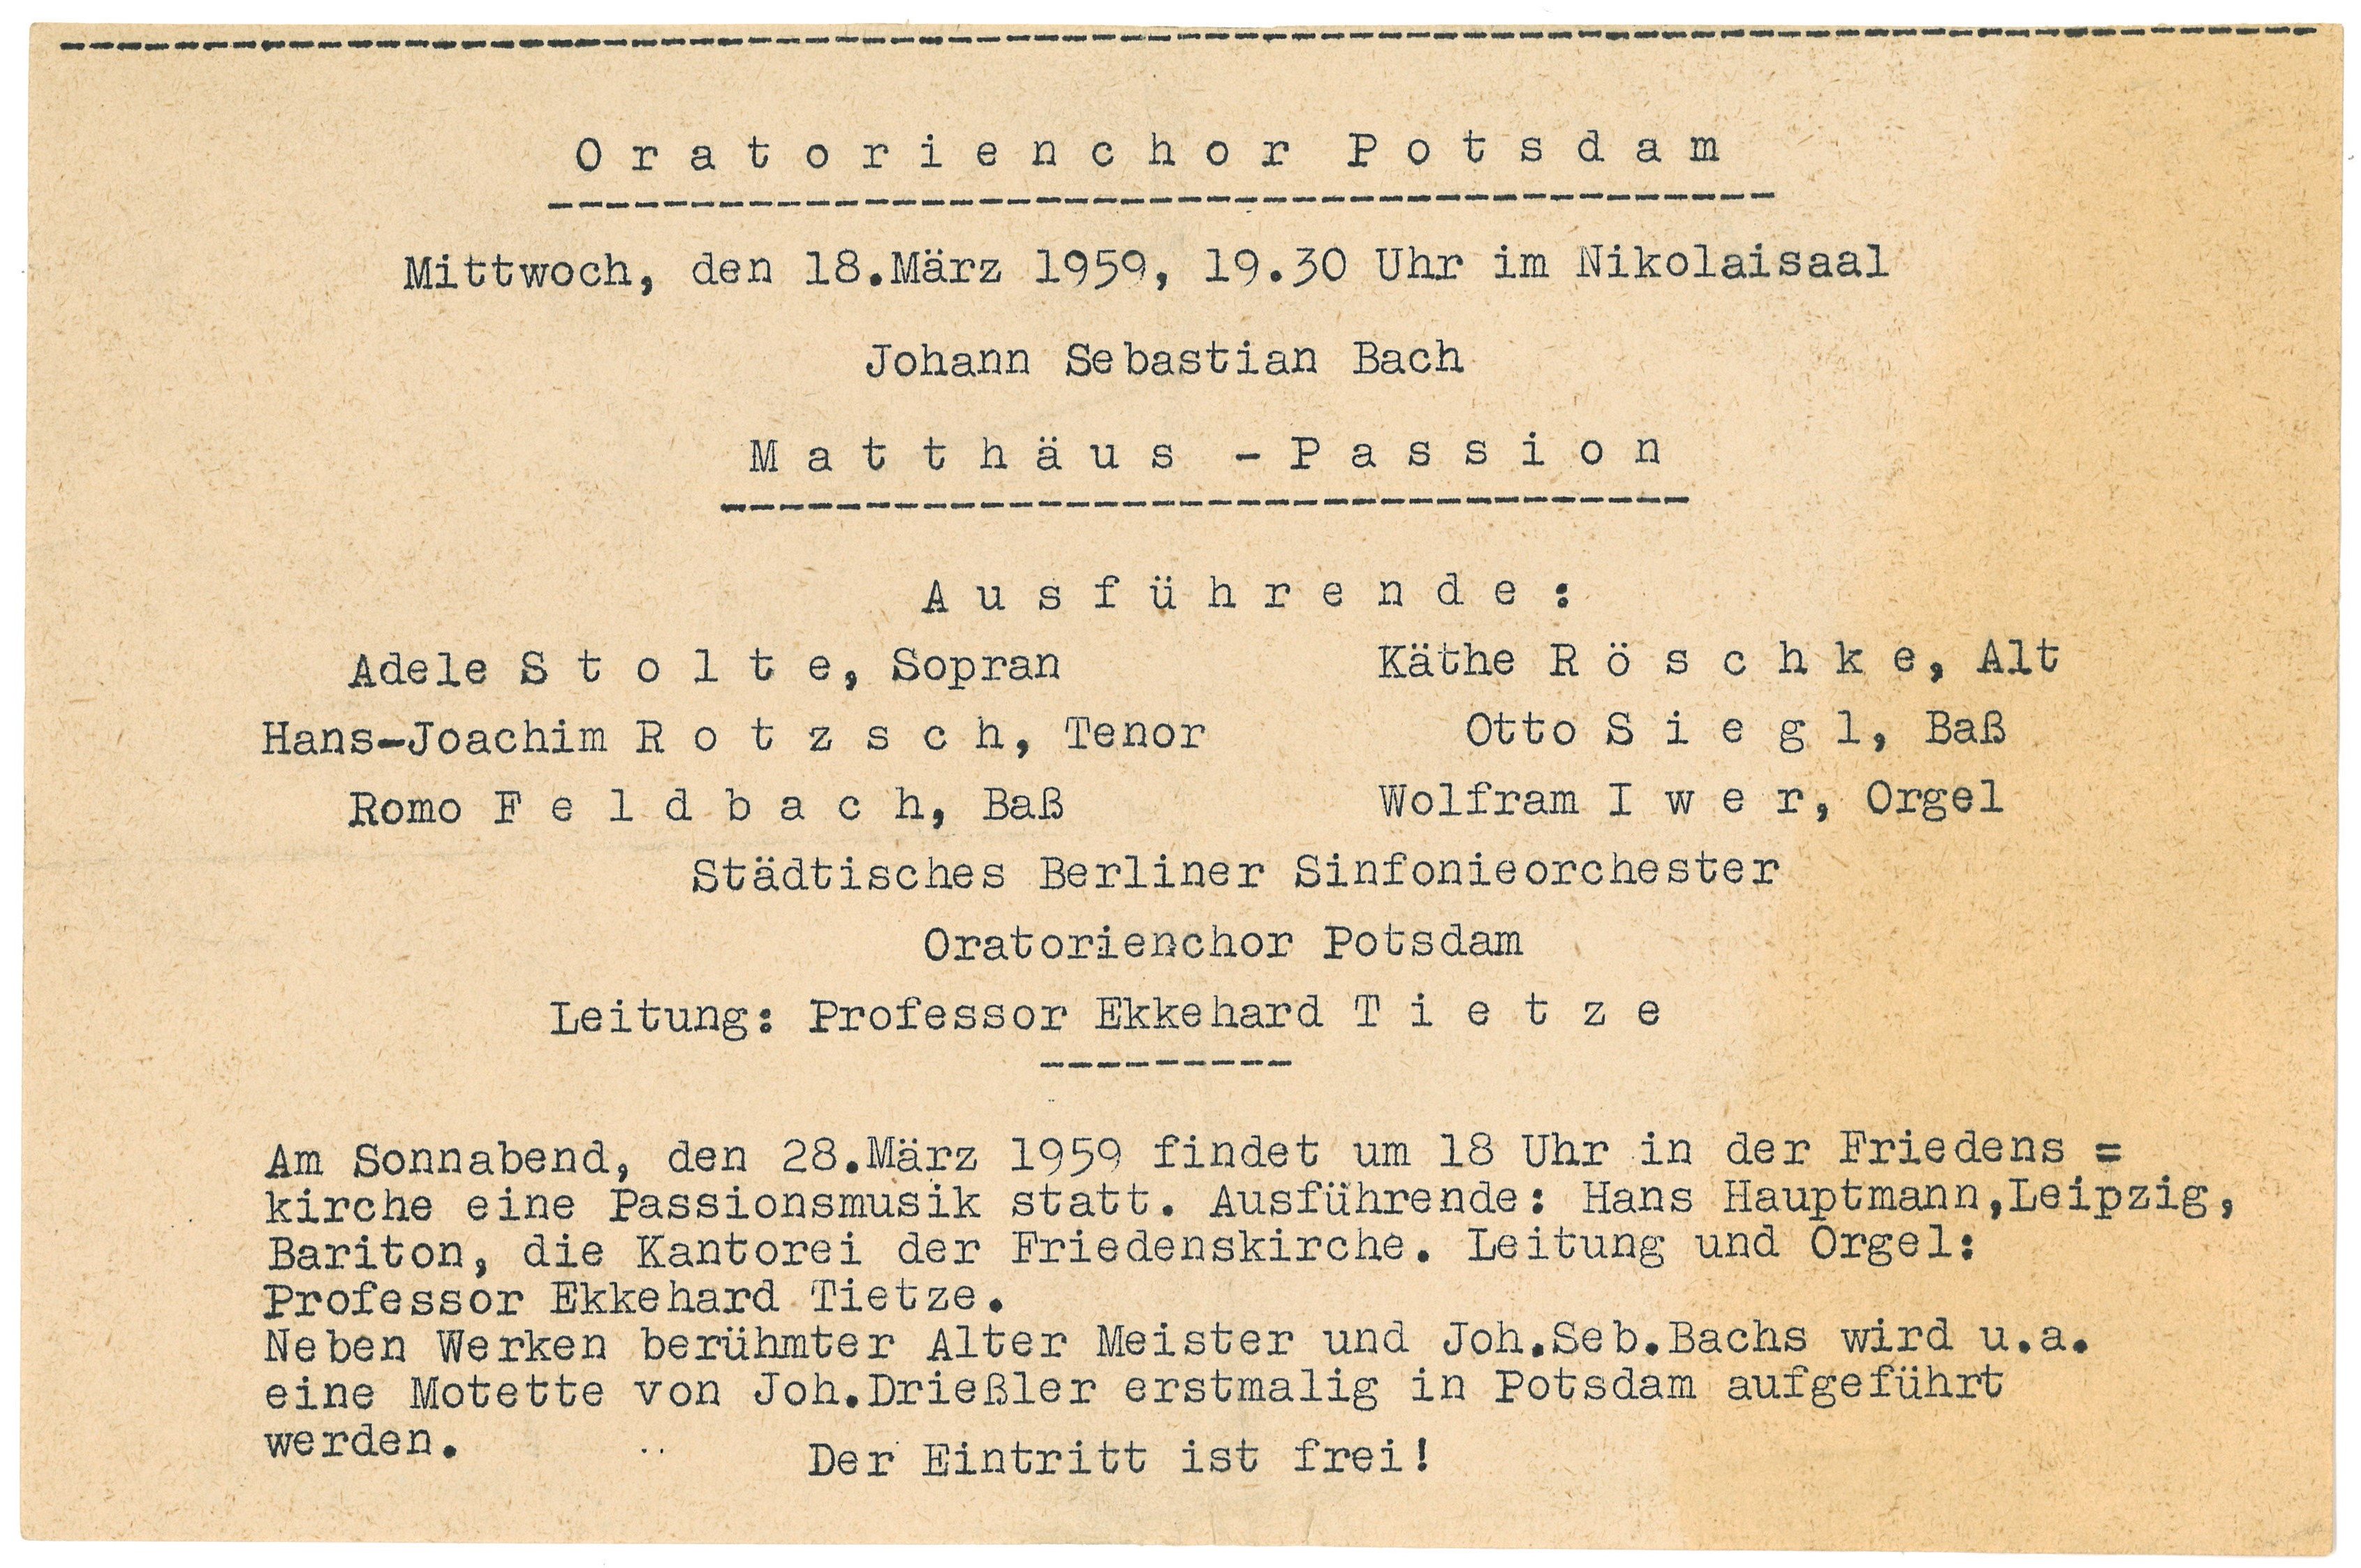 Einladung des Oratorienchors Potsdam zur Aufführung der Matthäus-Passion im Nikolaisaal am 18. März 1959 (Landesgeschichtliche Vereinigung für die Mark Brandenburg e.V., Archiv CC BY)